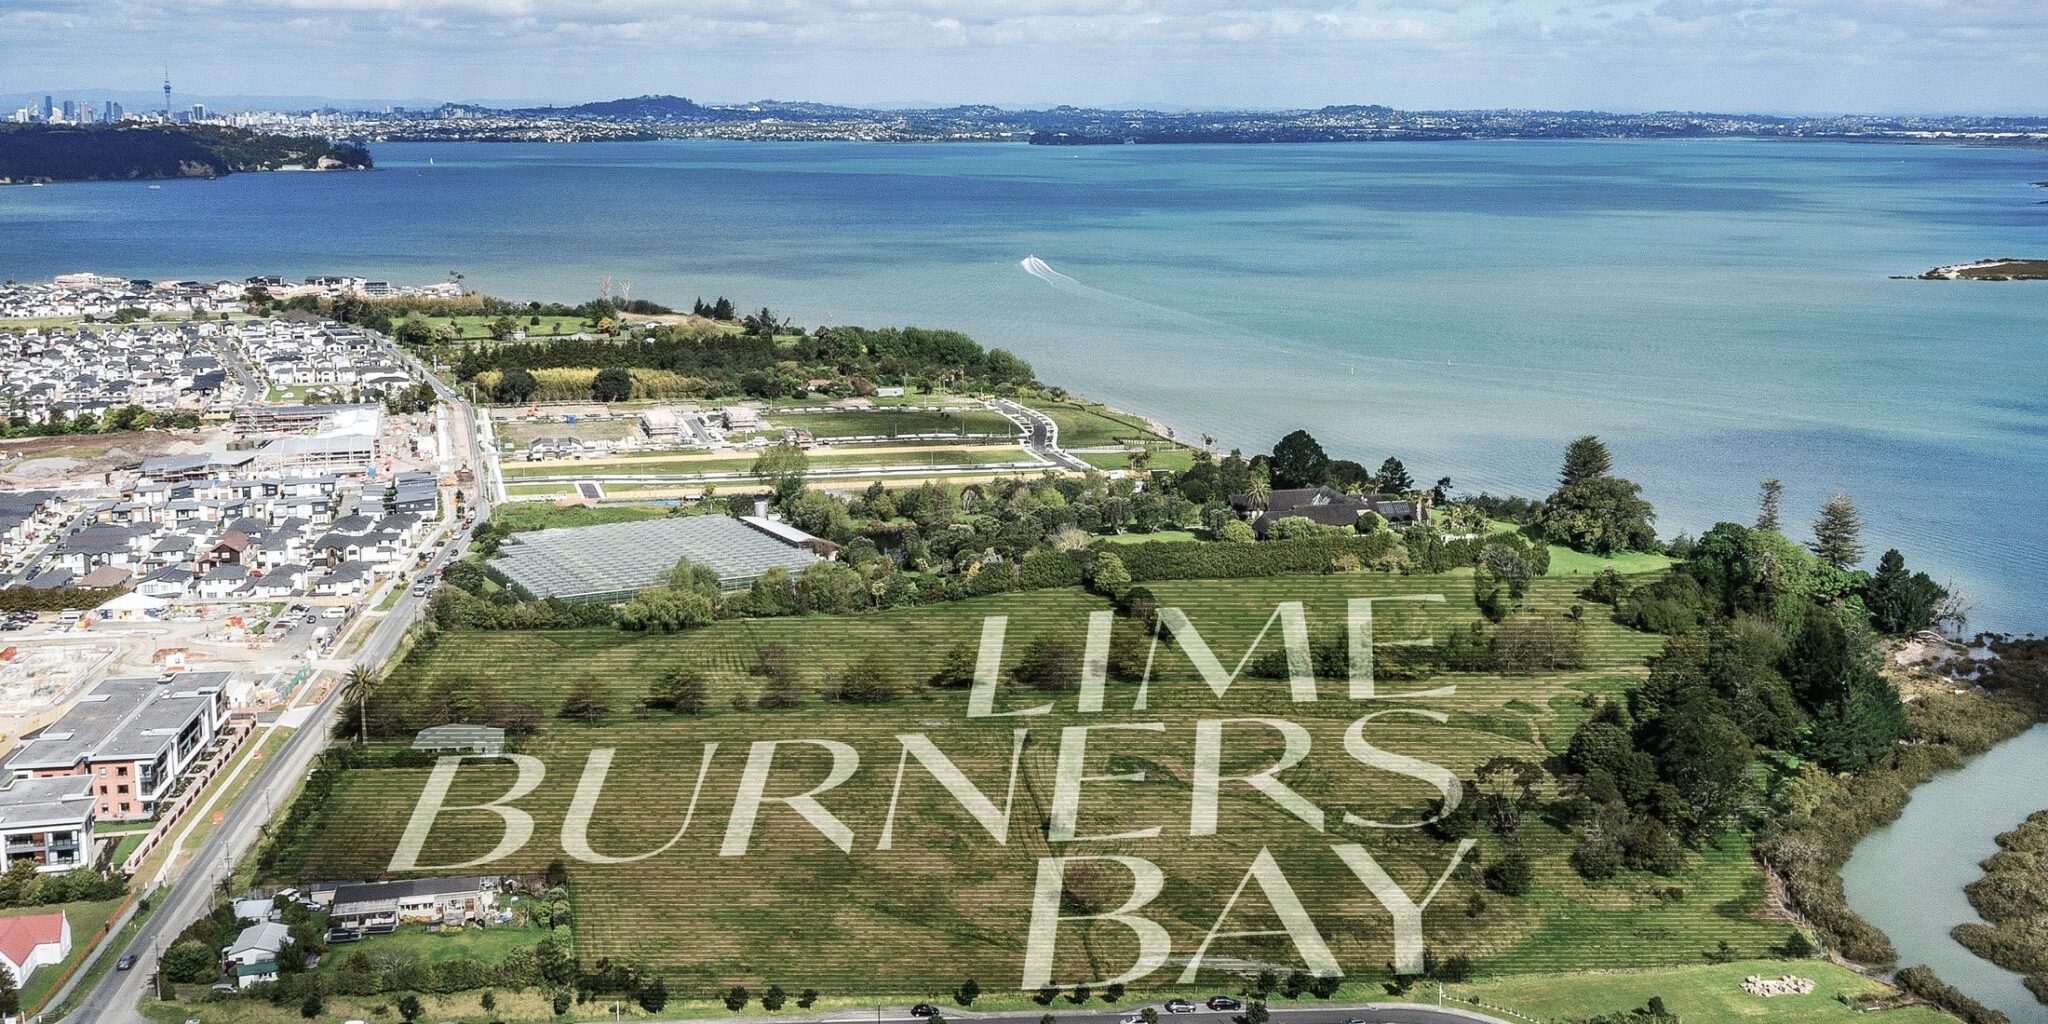 Lime Burners Bay